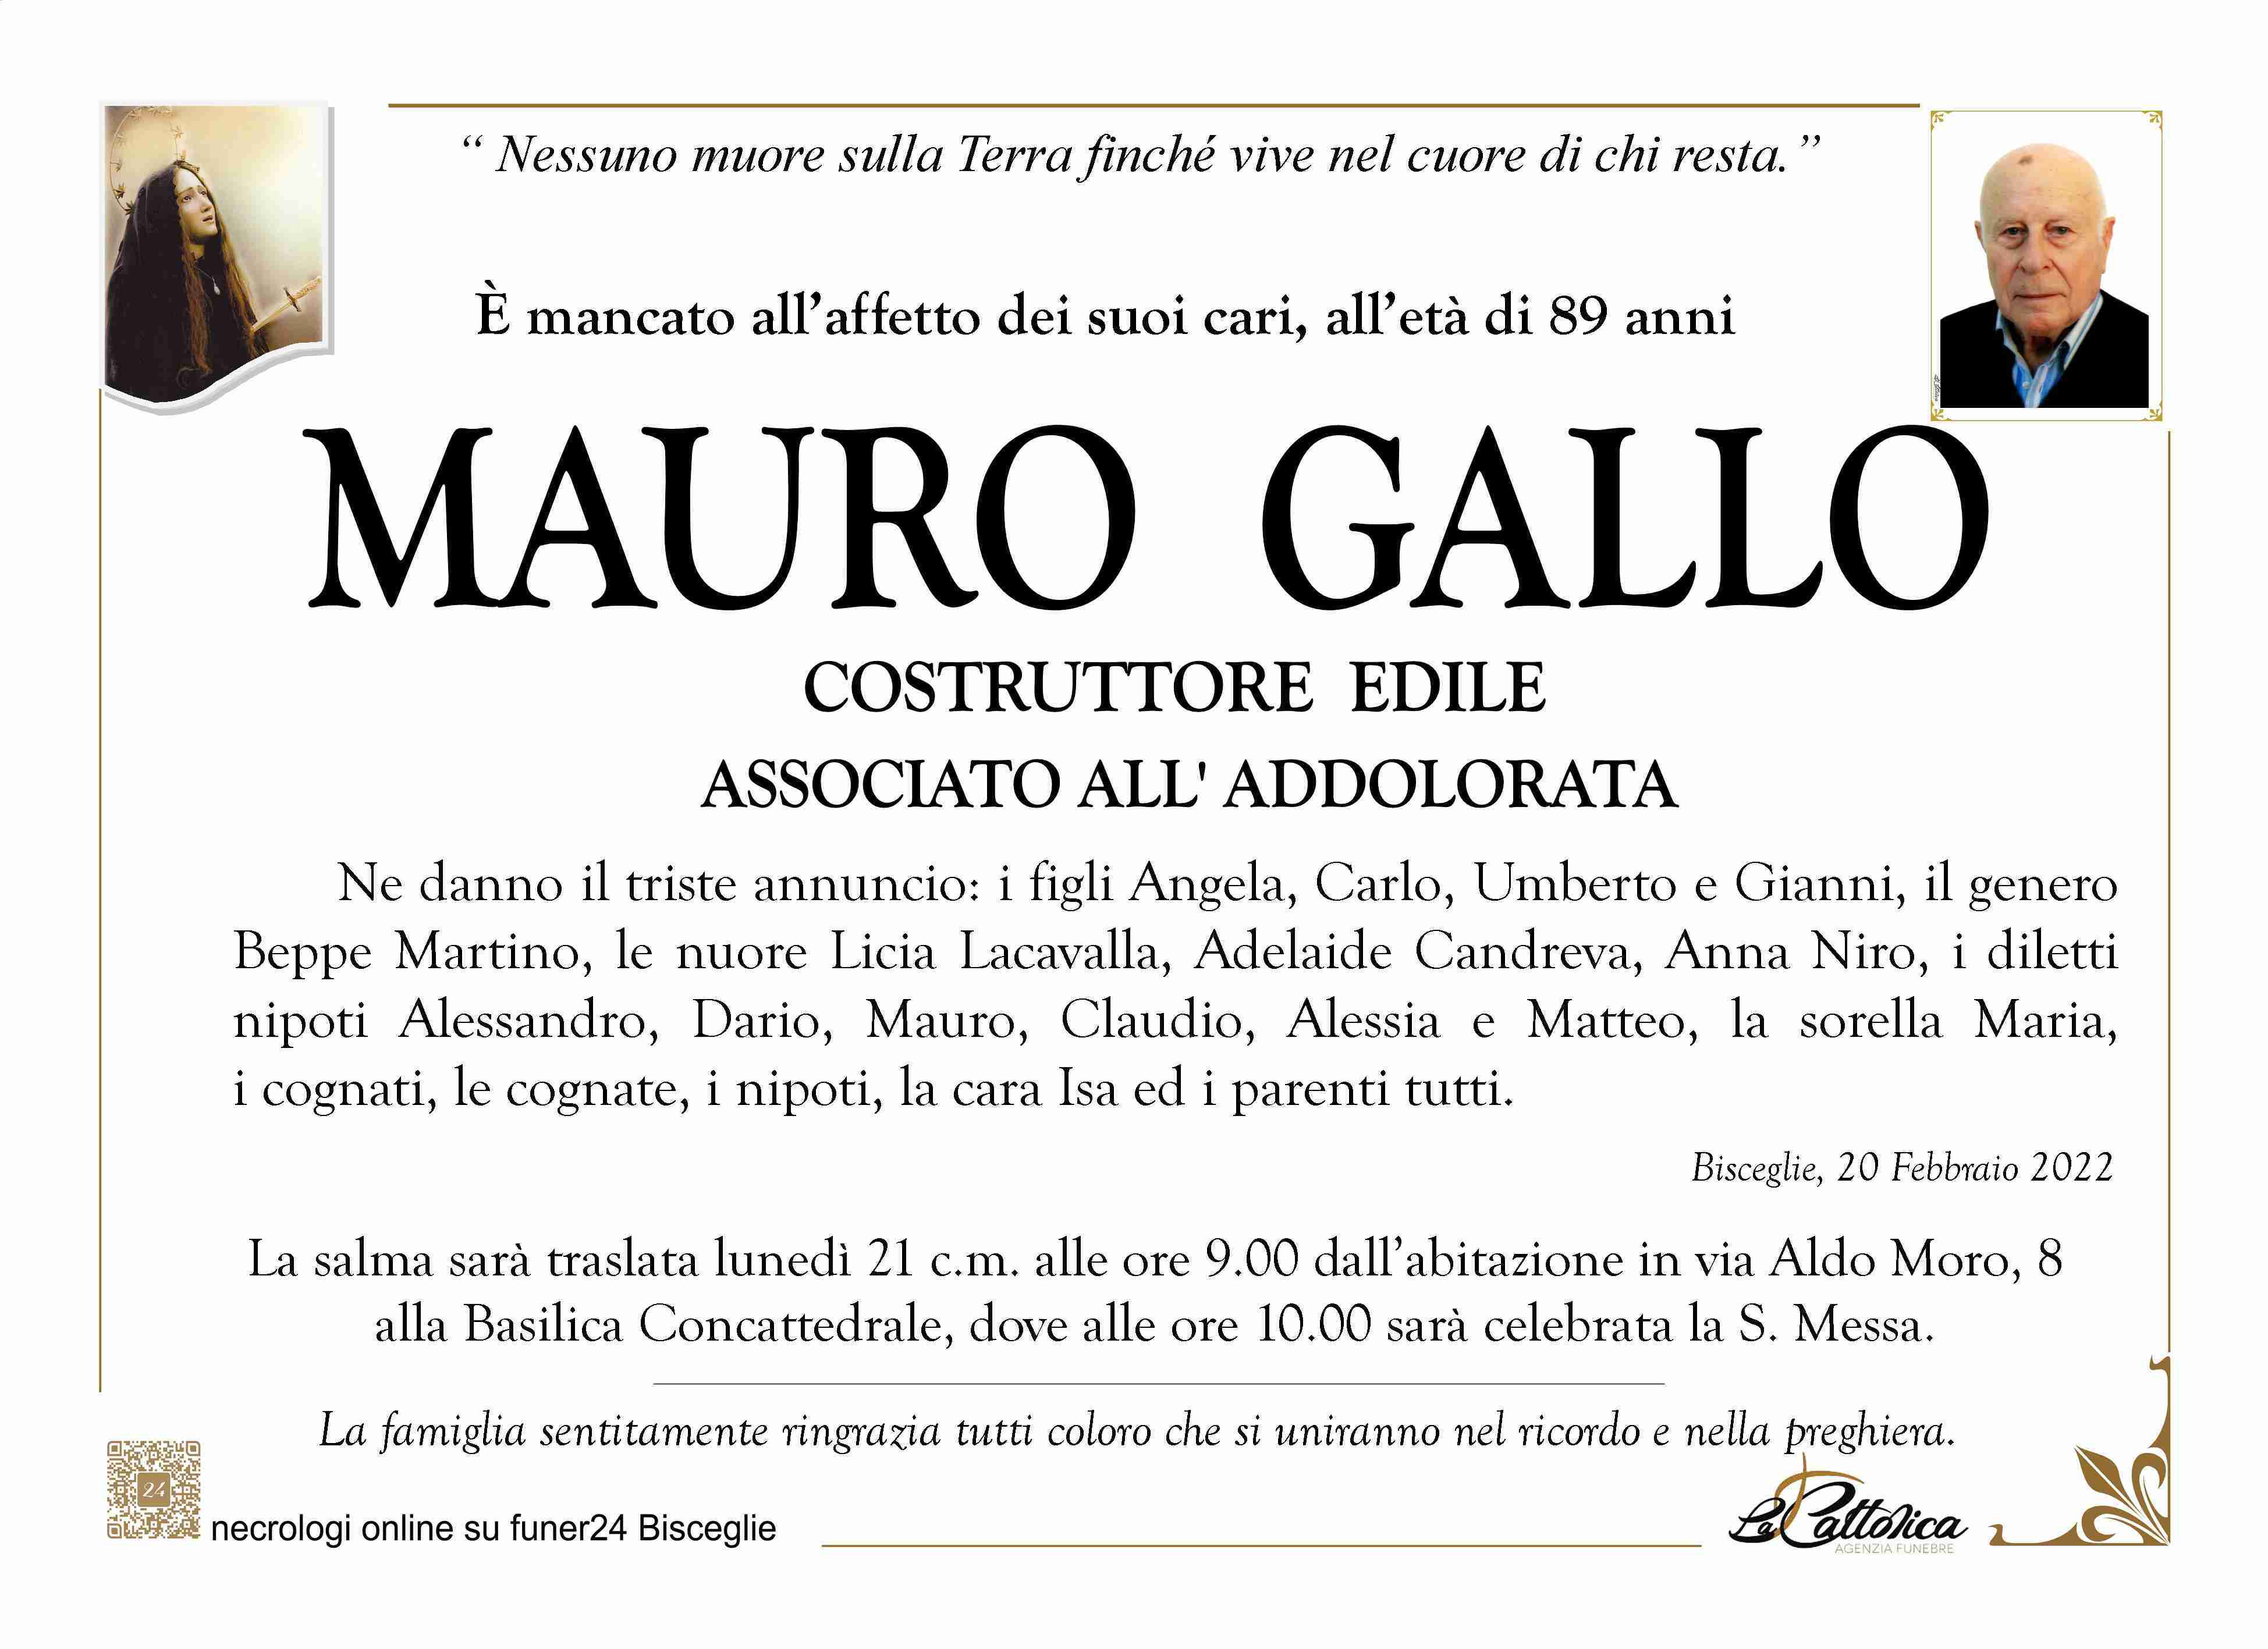 Mauro Gallo